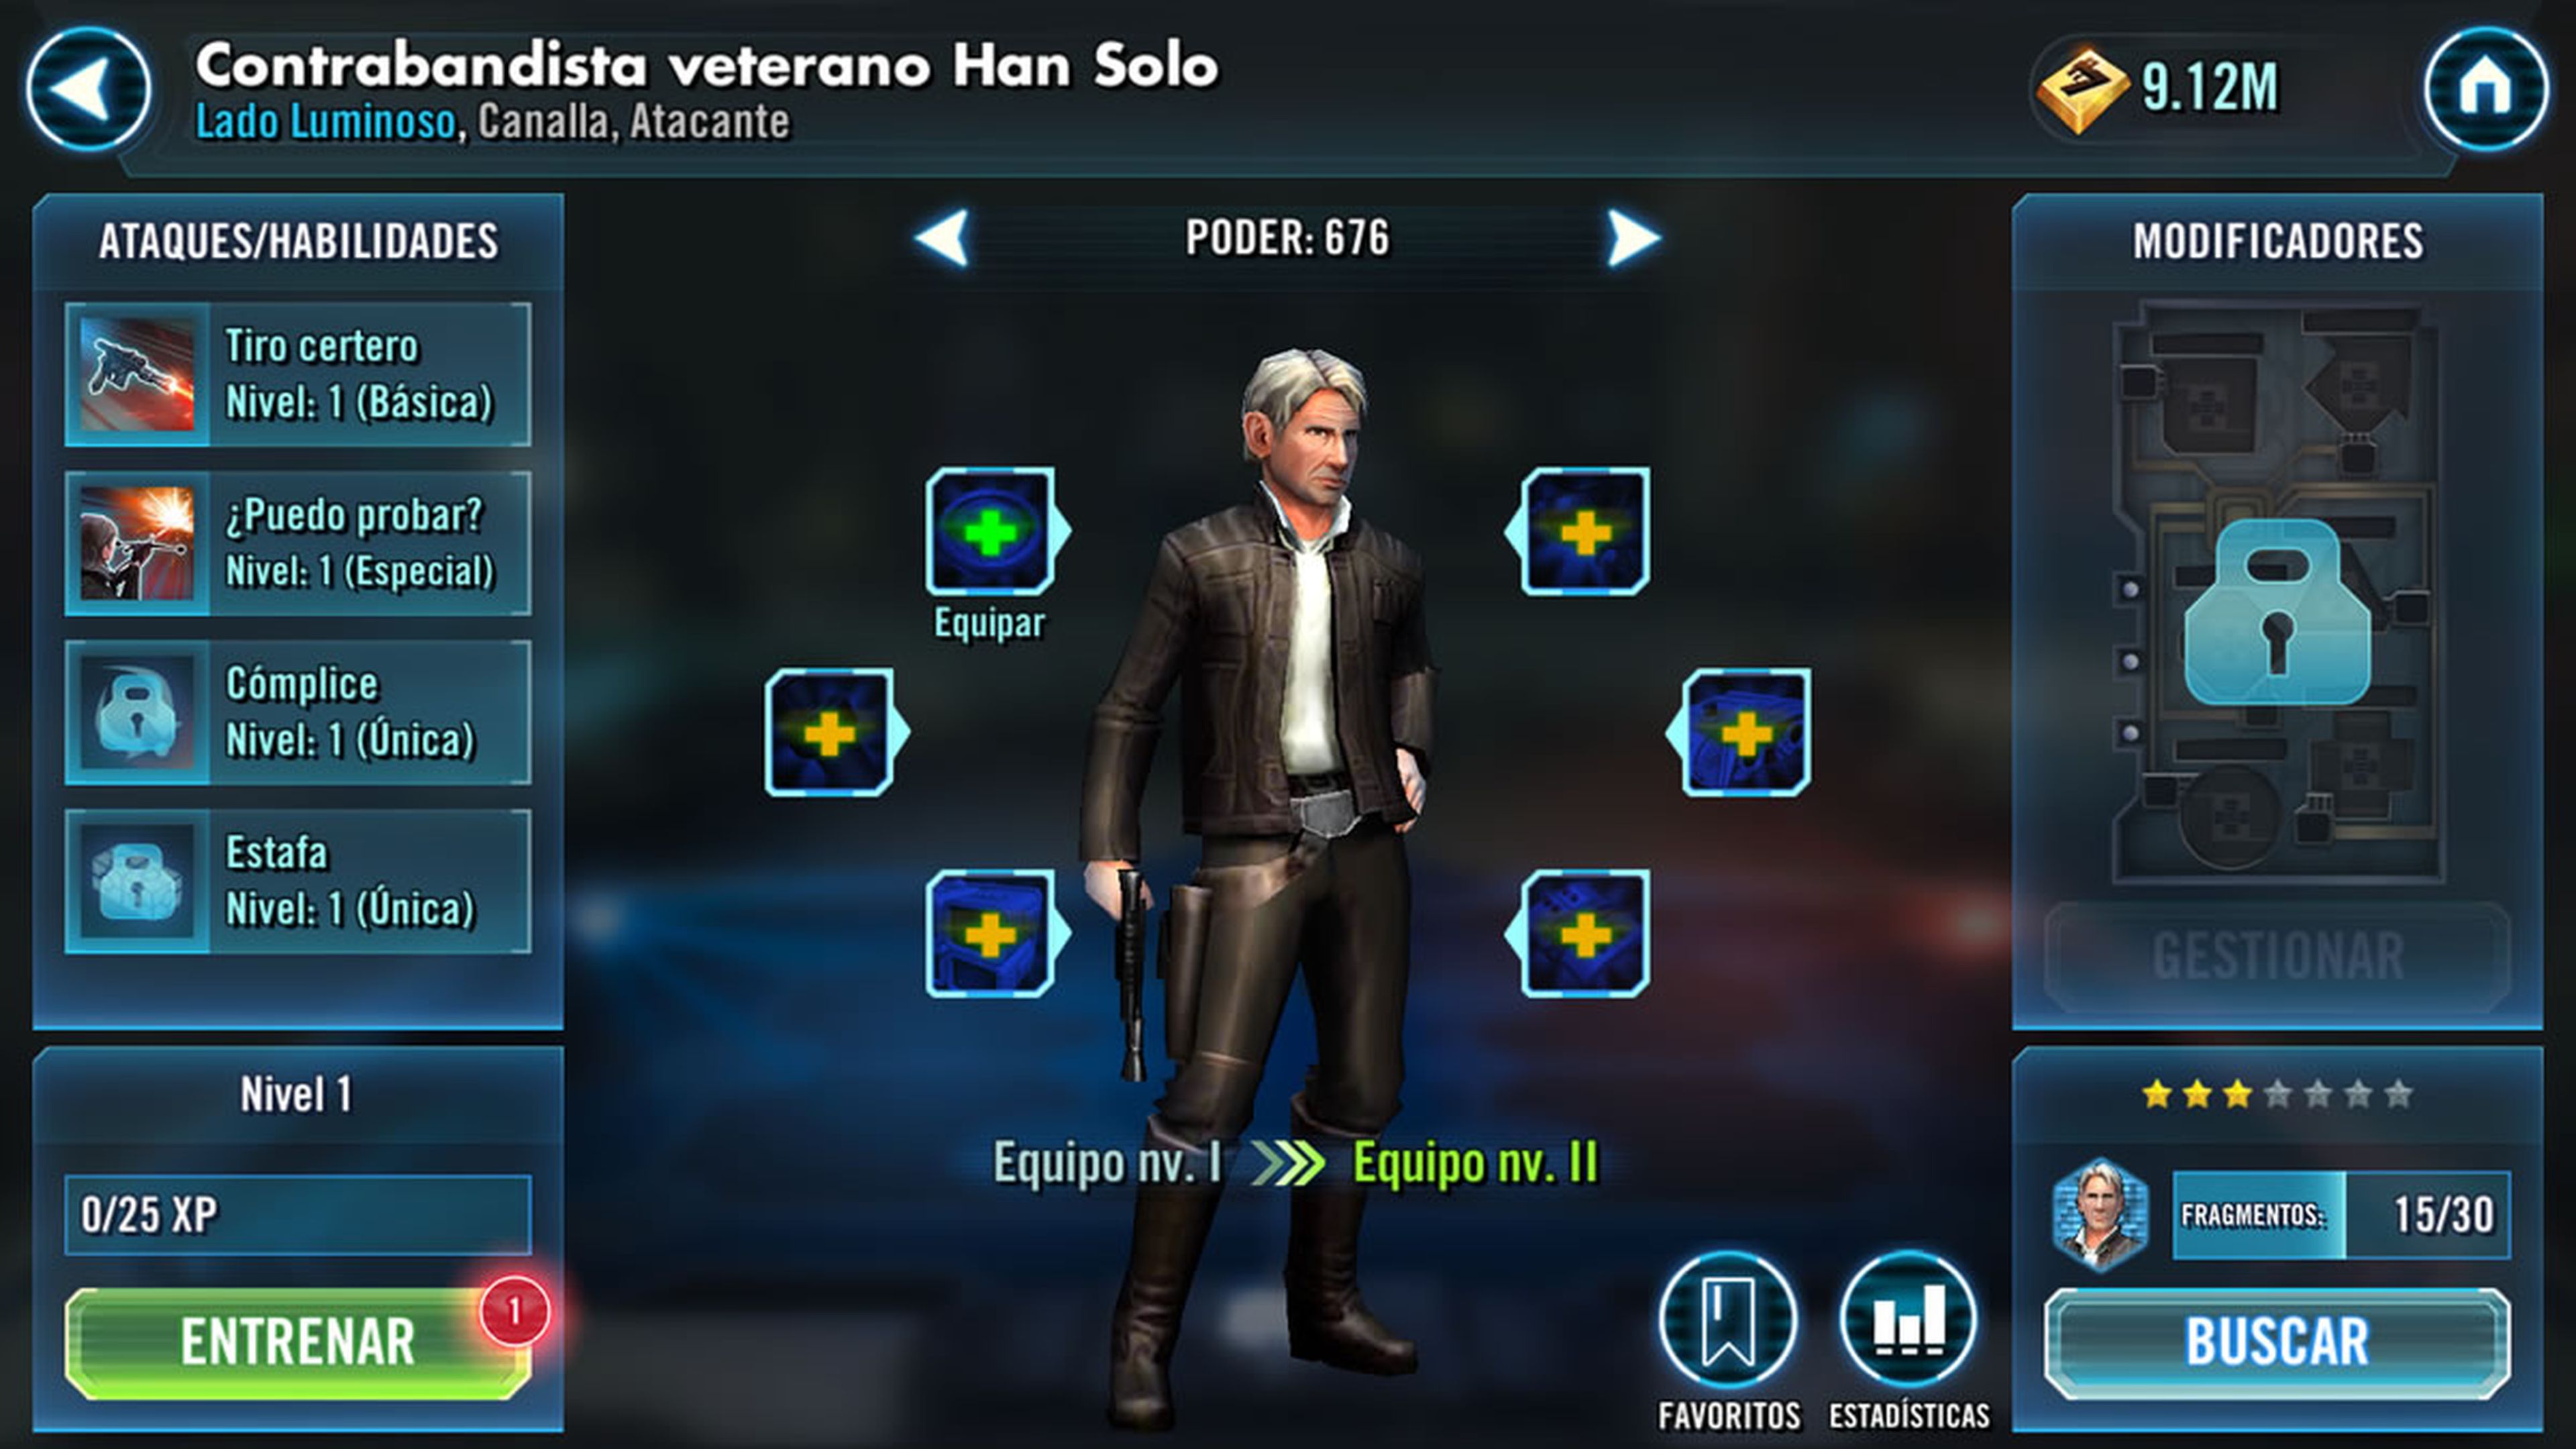 Contrabandista veterano Han Solo